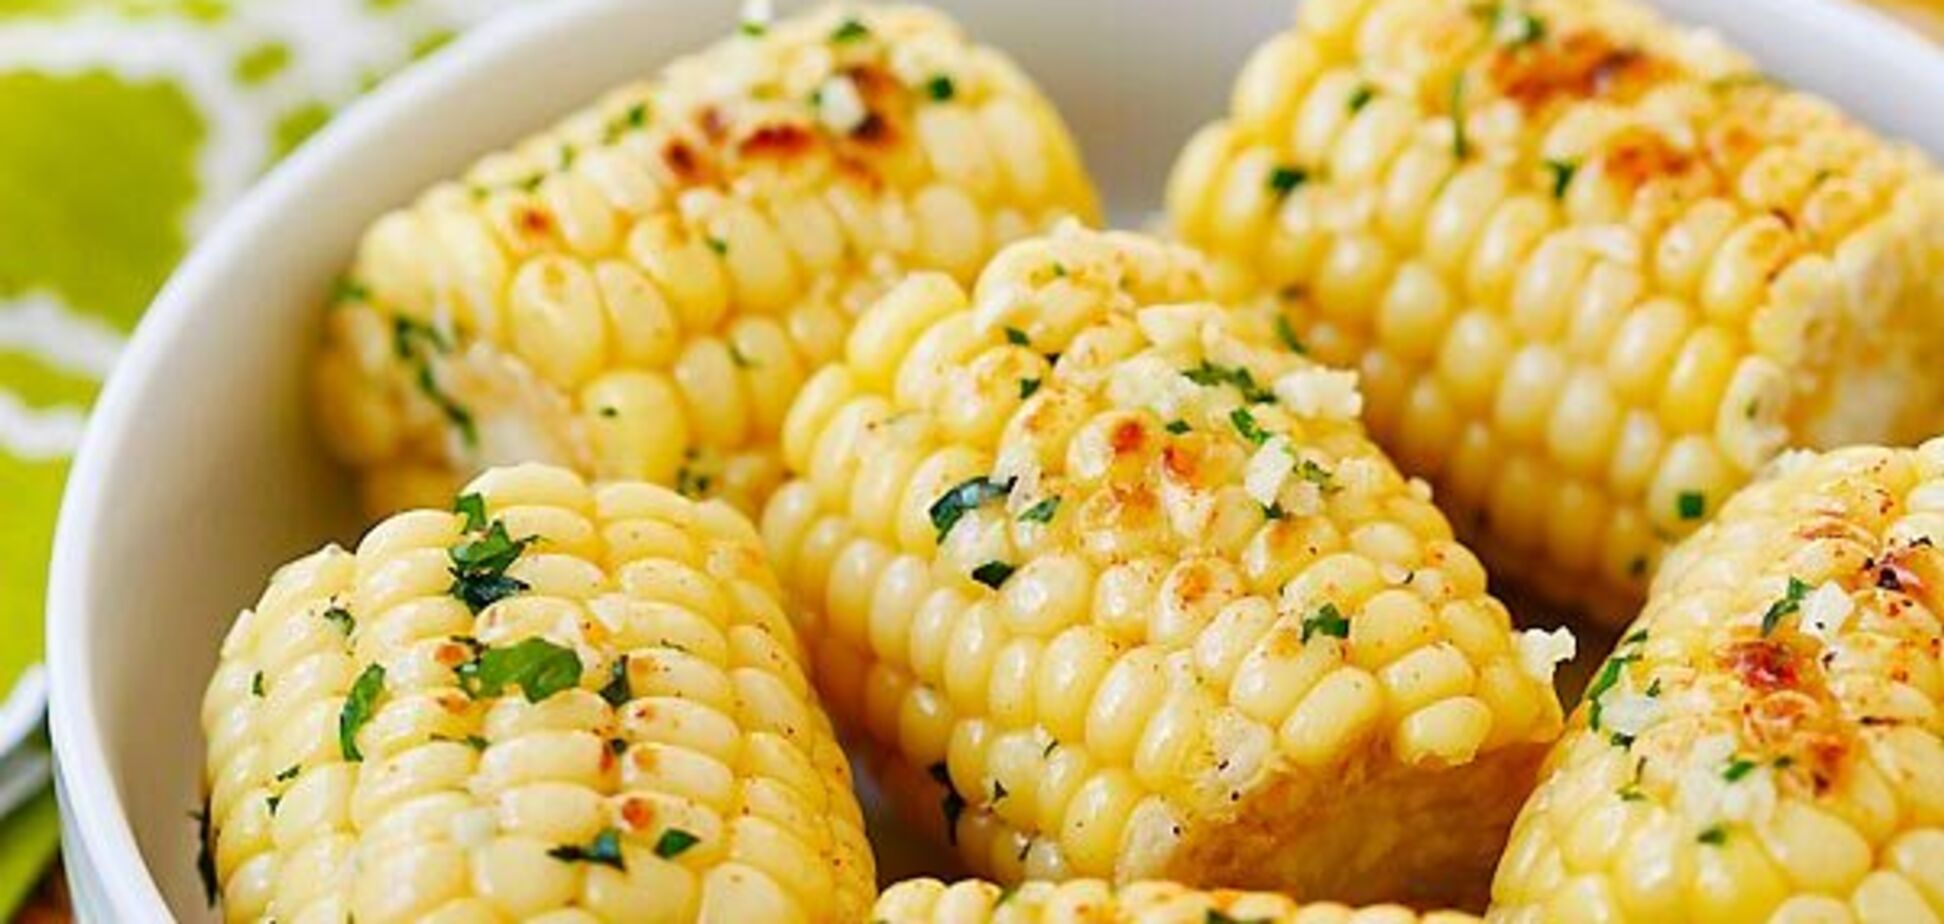 Як смачно приготувати кукурудзу: варити не потрібно